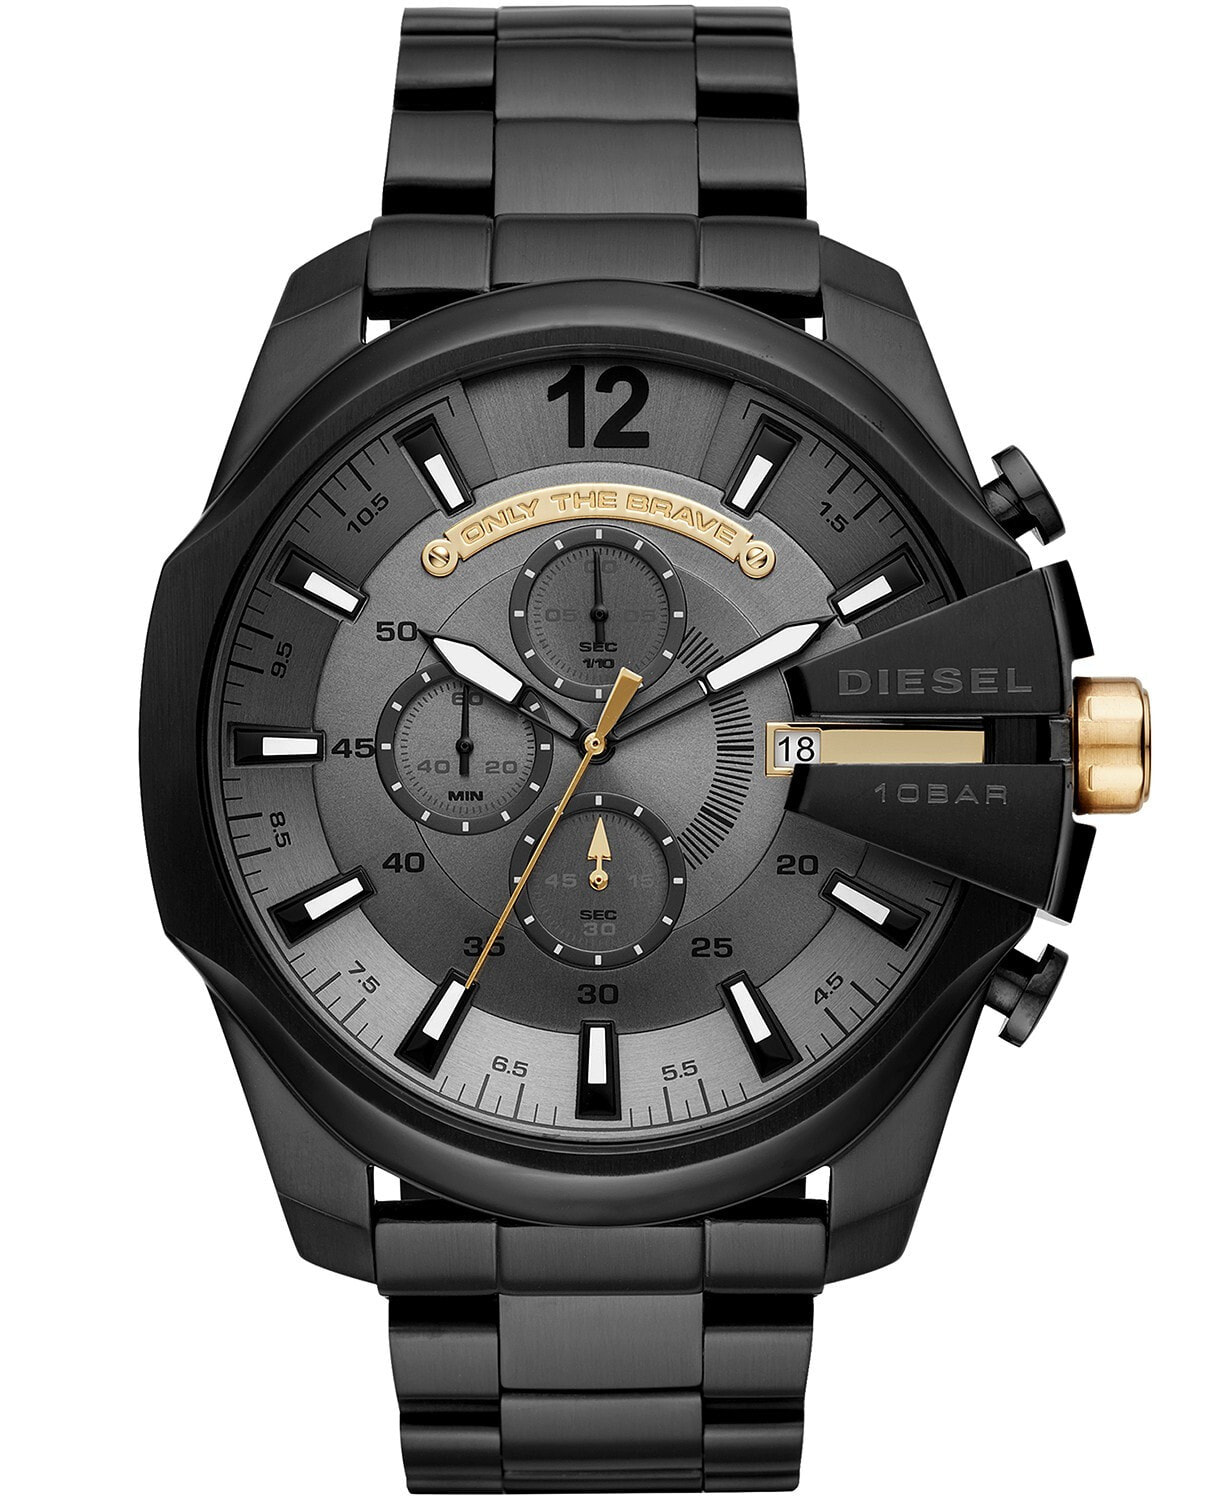 Мужские наручные часы с черным браслетом Diesel Chronograph Mega Chief Black Stainless Steel Bracelet Watch 51mm